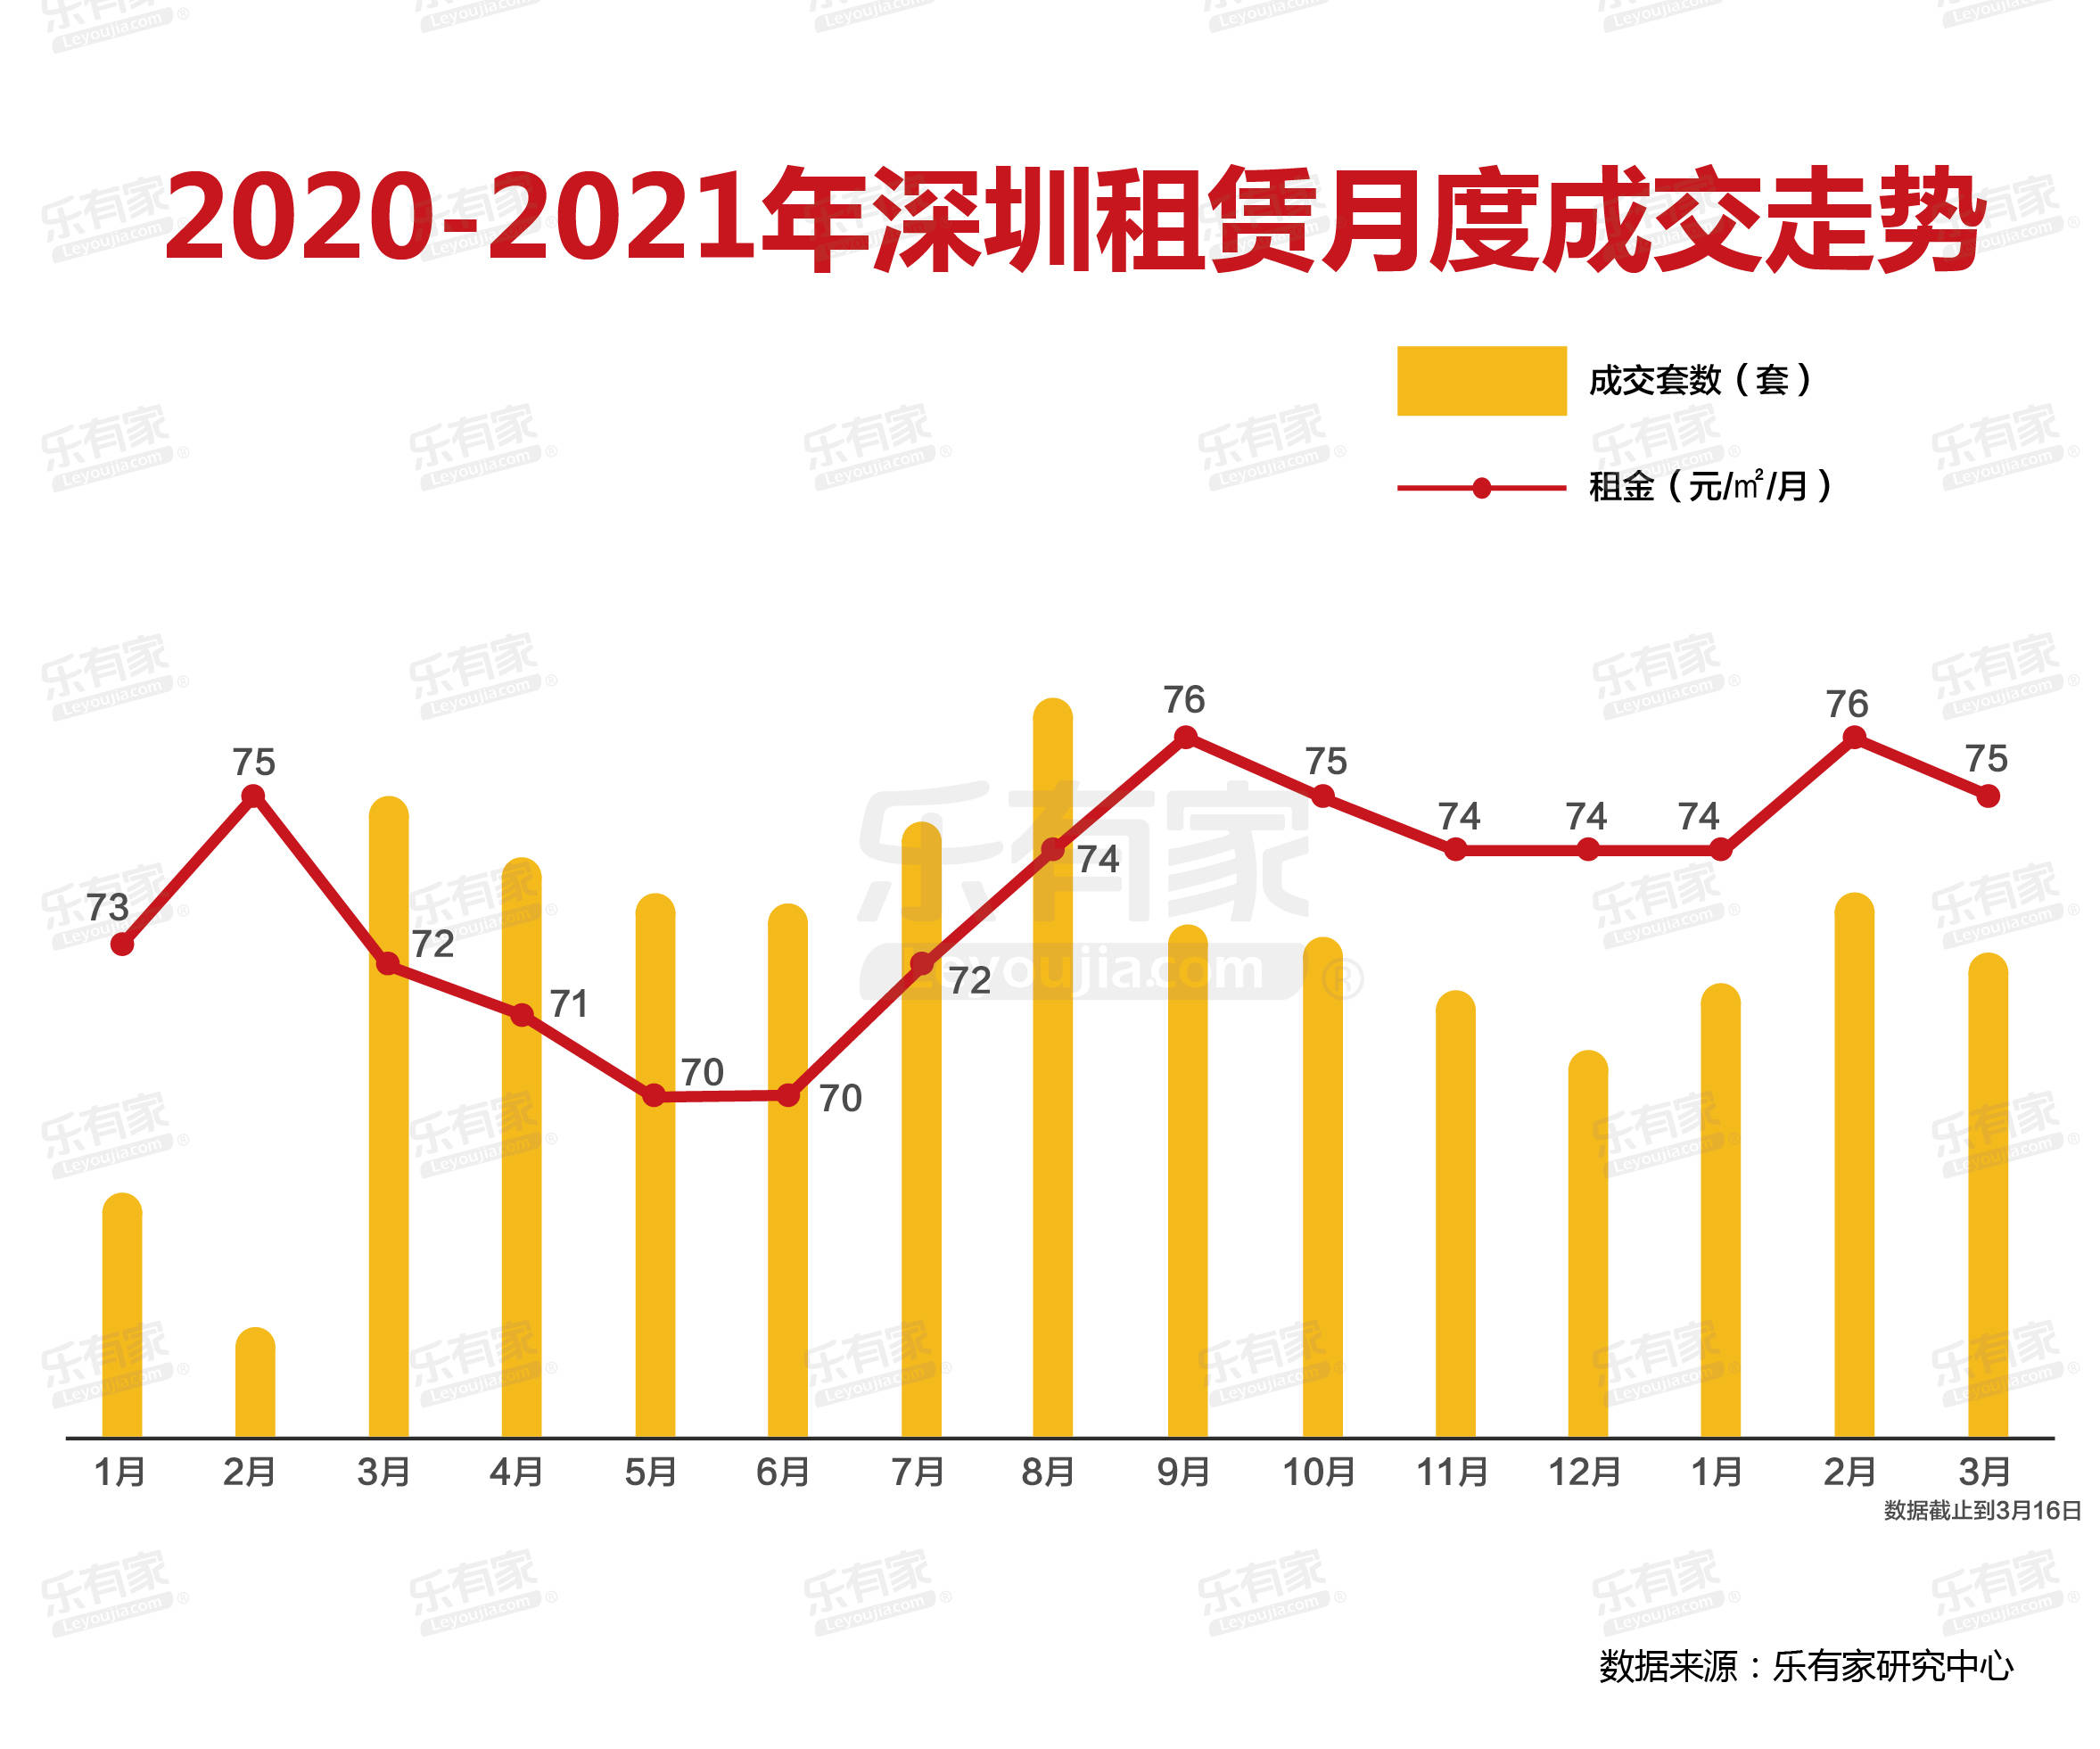 深圳外来人口急剧减少_中国城市流动人口急剧下降的6个城市,广州第一 深圳第